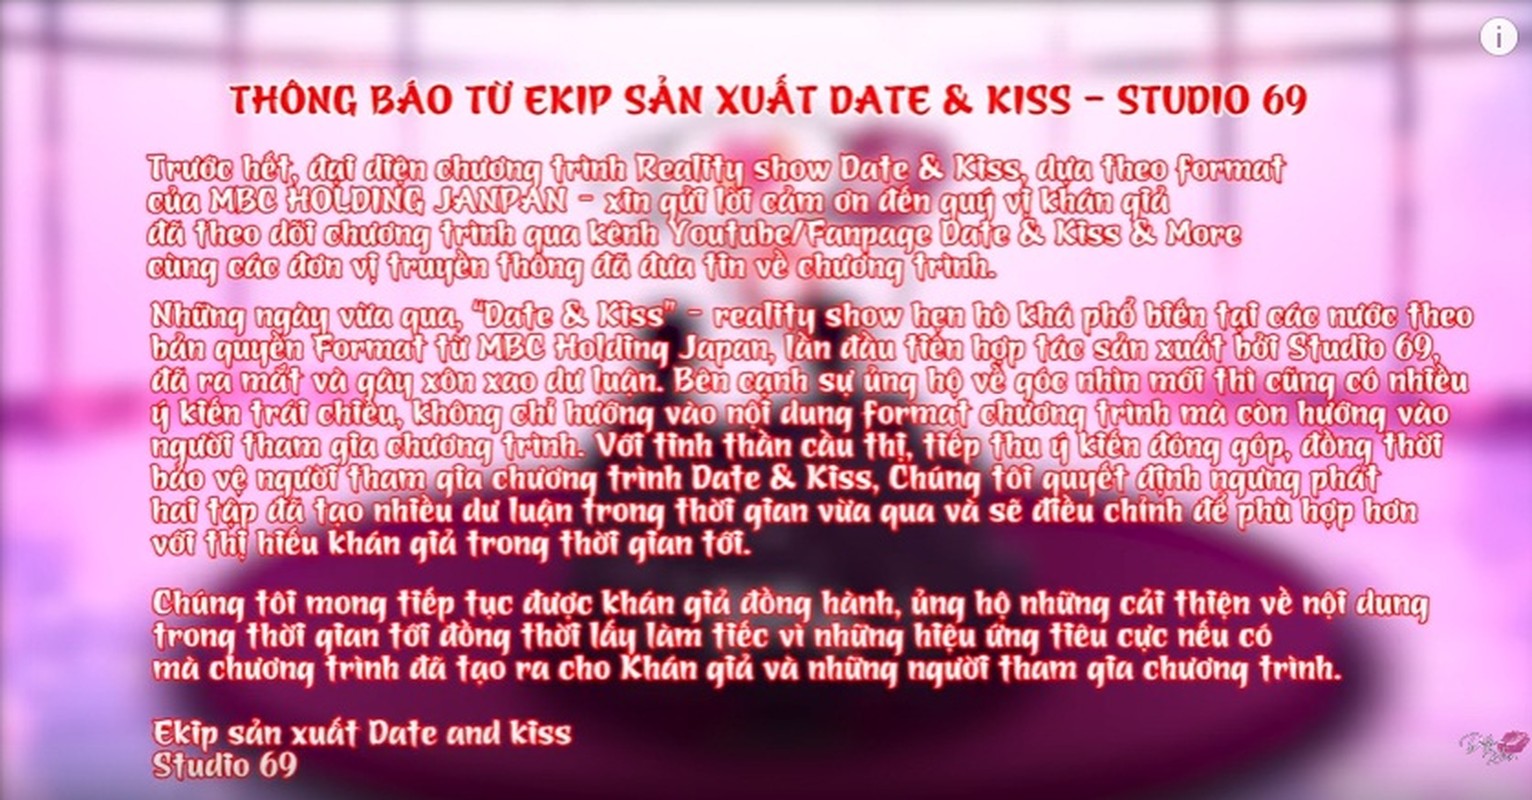 “Date & Kiss” da la gi, nhieu gameshow con khien khan gia soc nang-Hinh-4